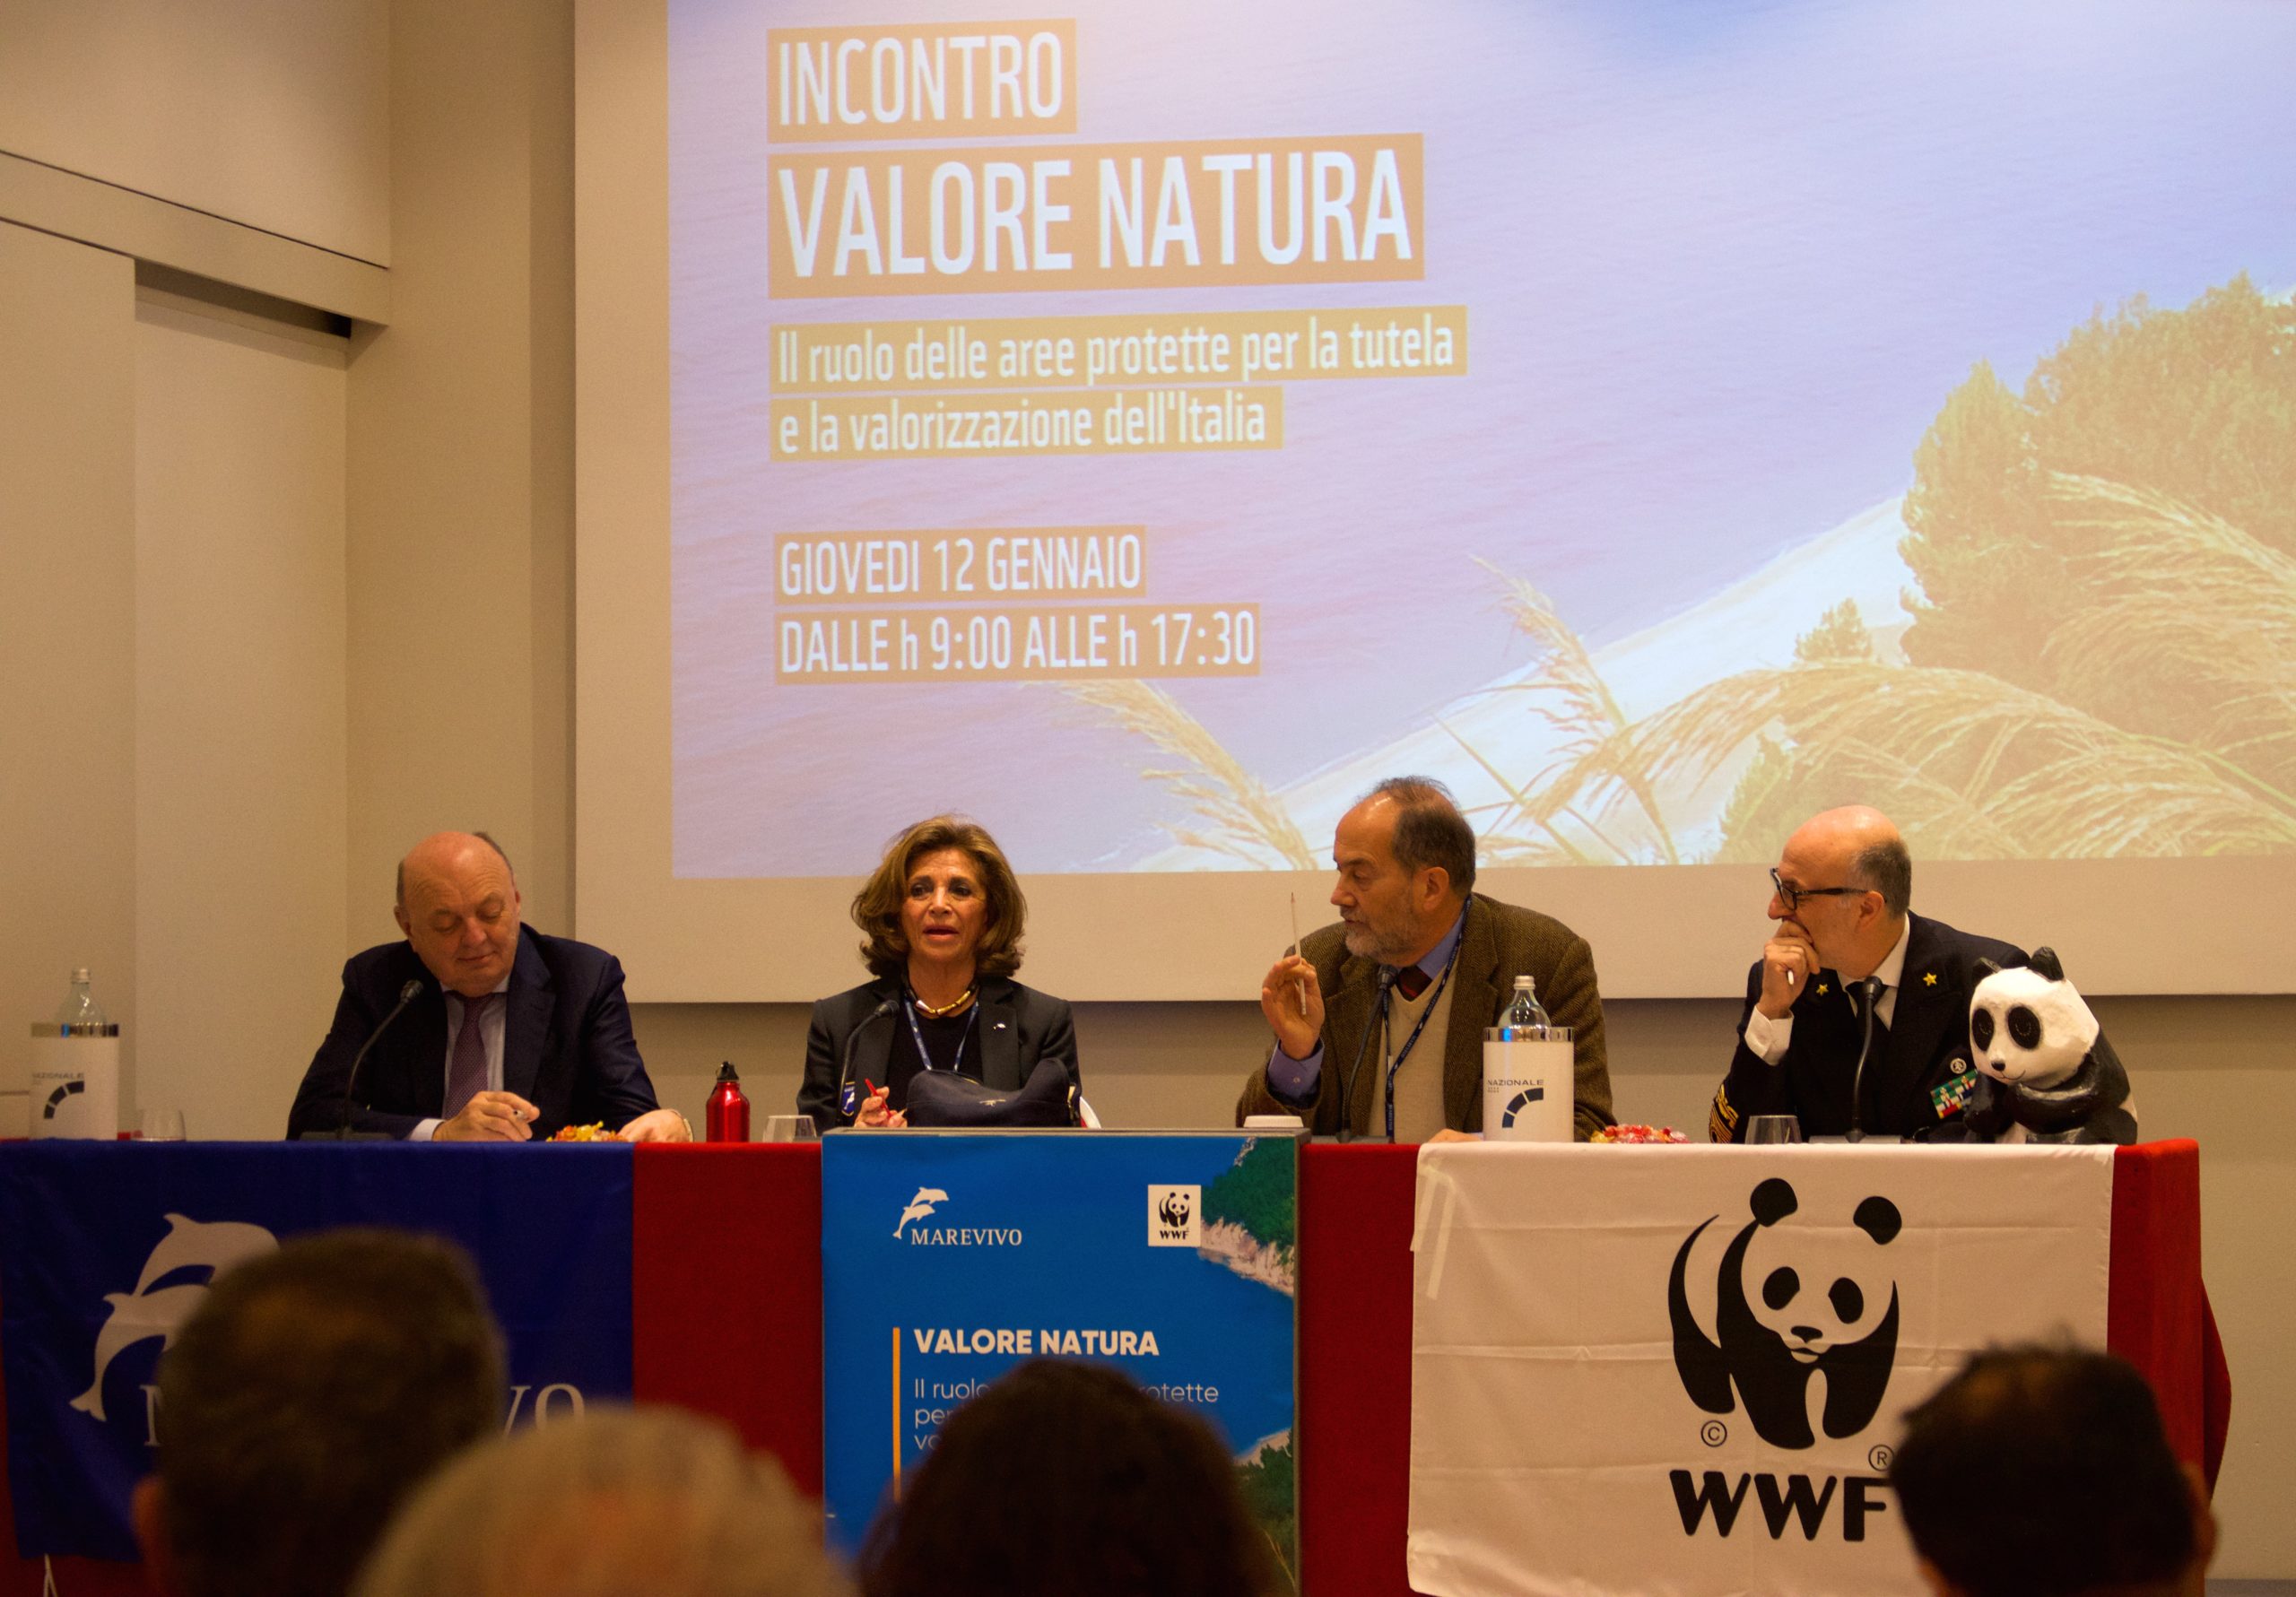 Valore Natura: il ruolo delle aree protette per la tutela e la valorizzazione dell’Italia